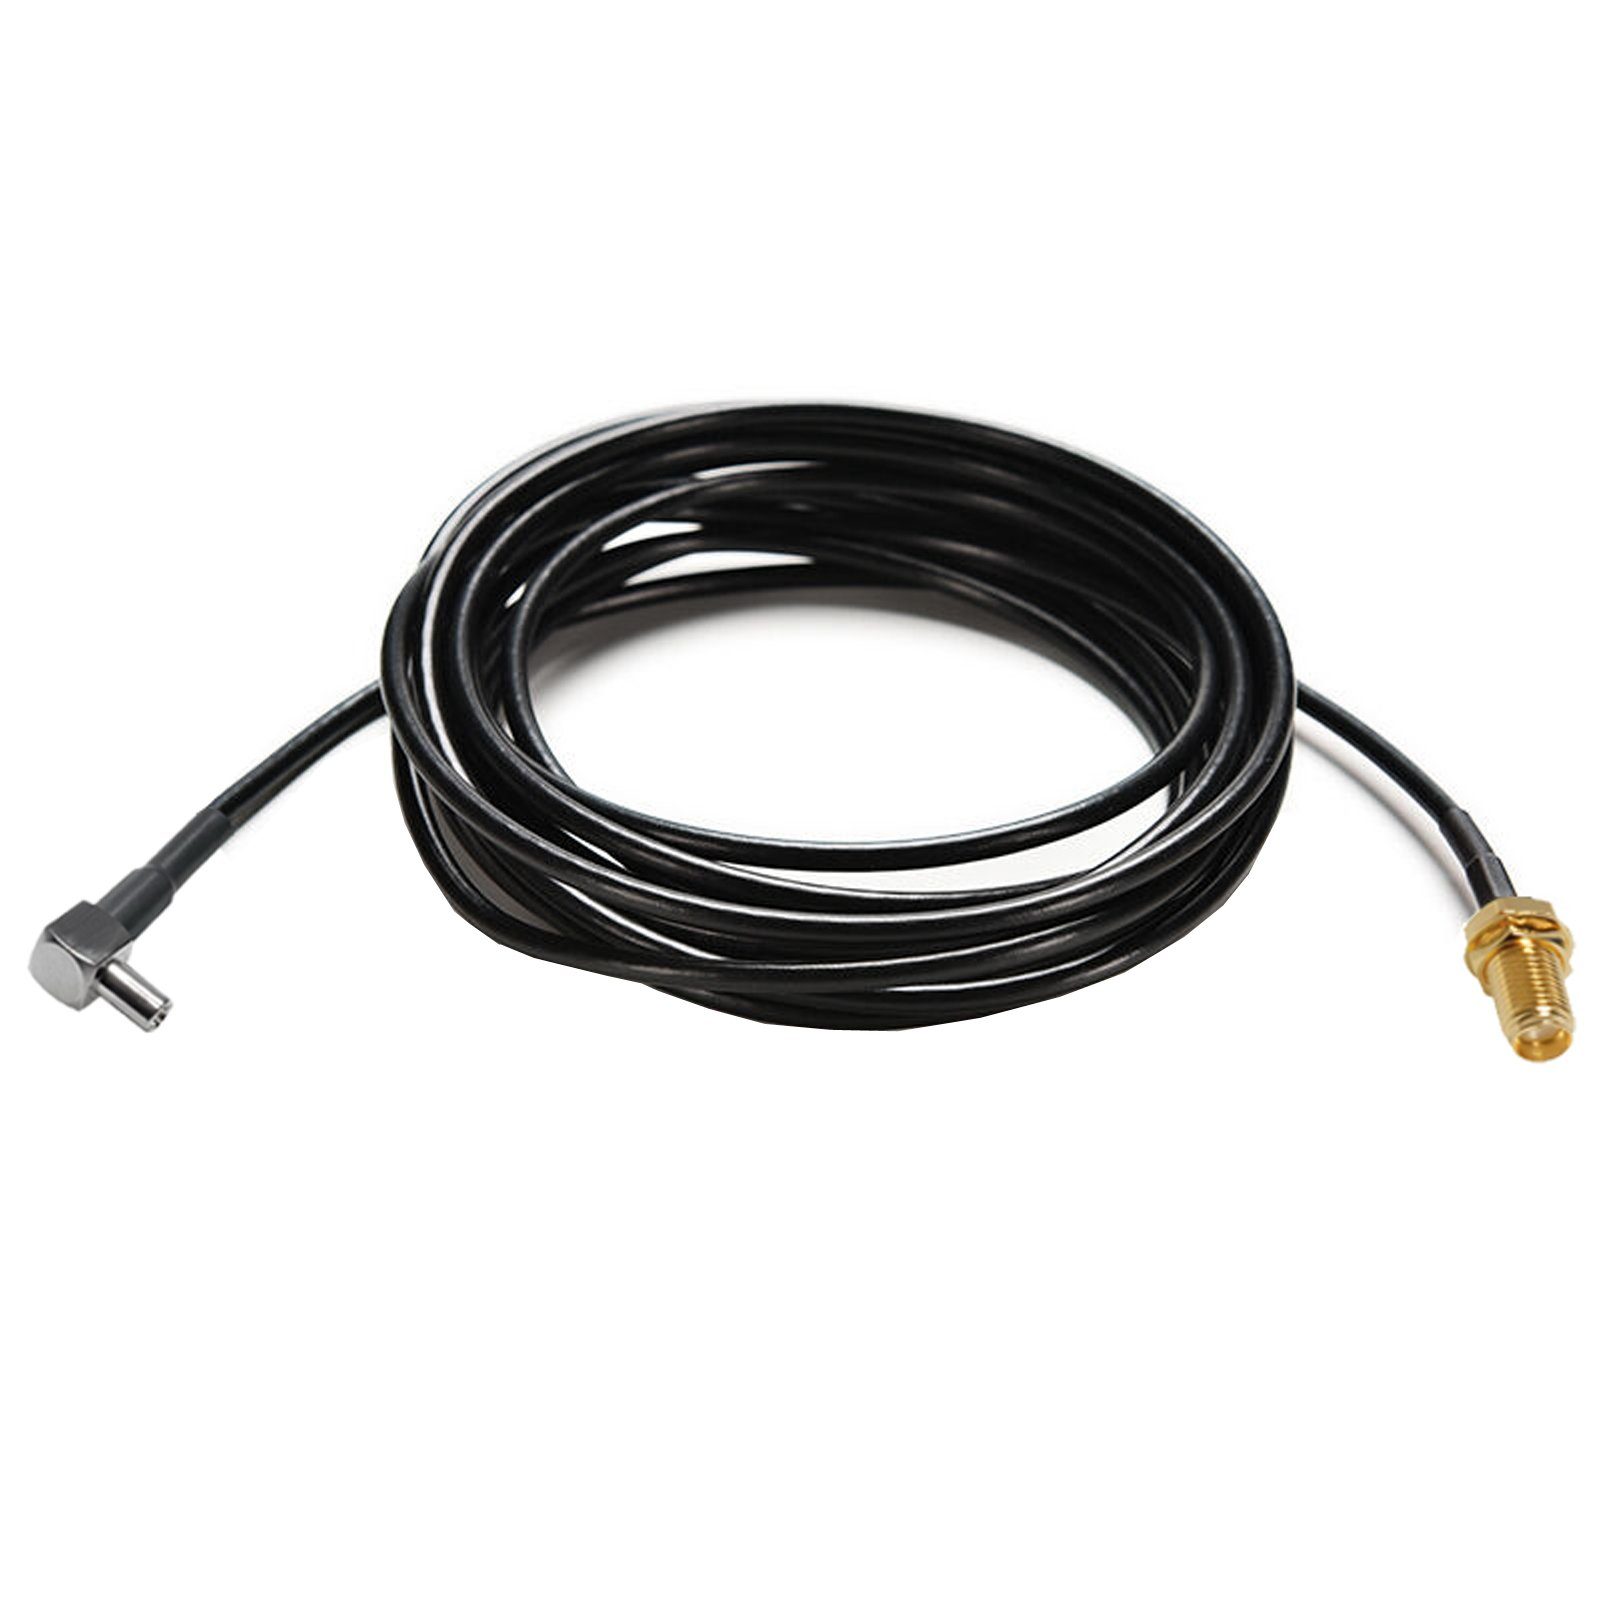 cm) Adapter Pigtail Bolwins für SMA 3m (300 E35 Stecker auf Antenne Verlängerungskabel, Buchse TS9 Kabel